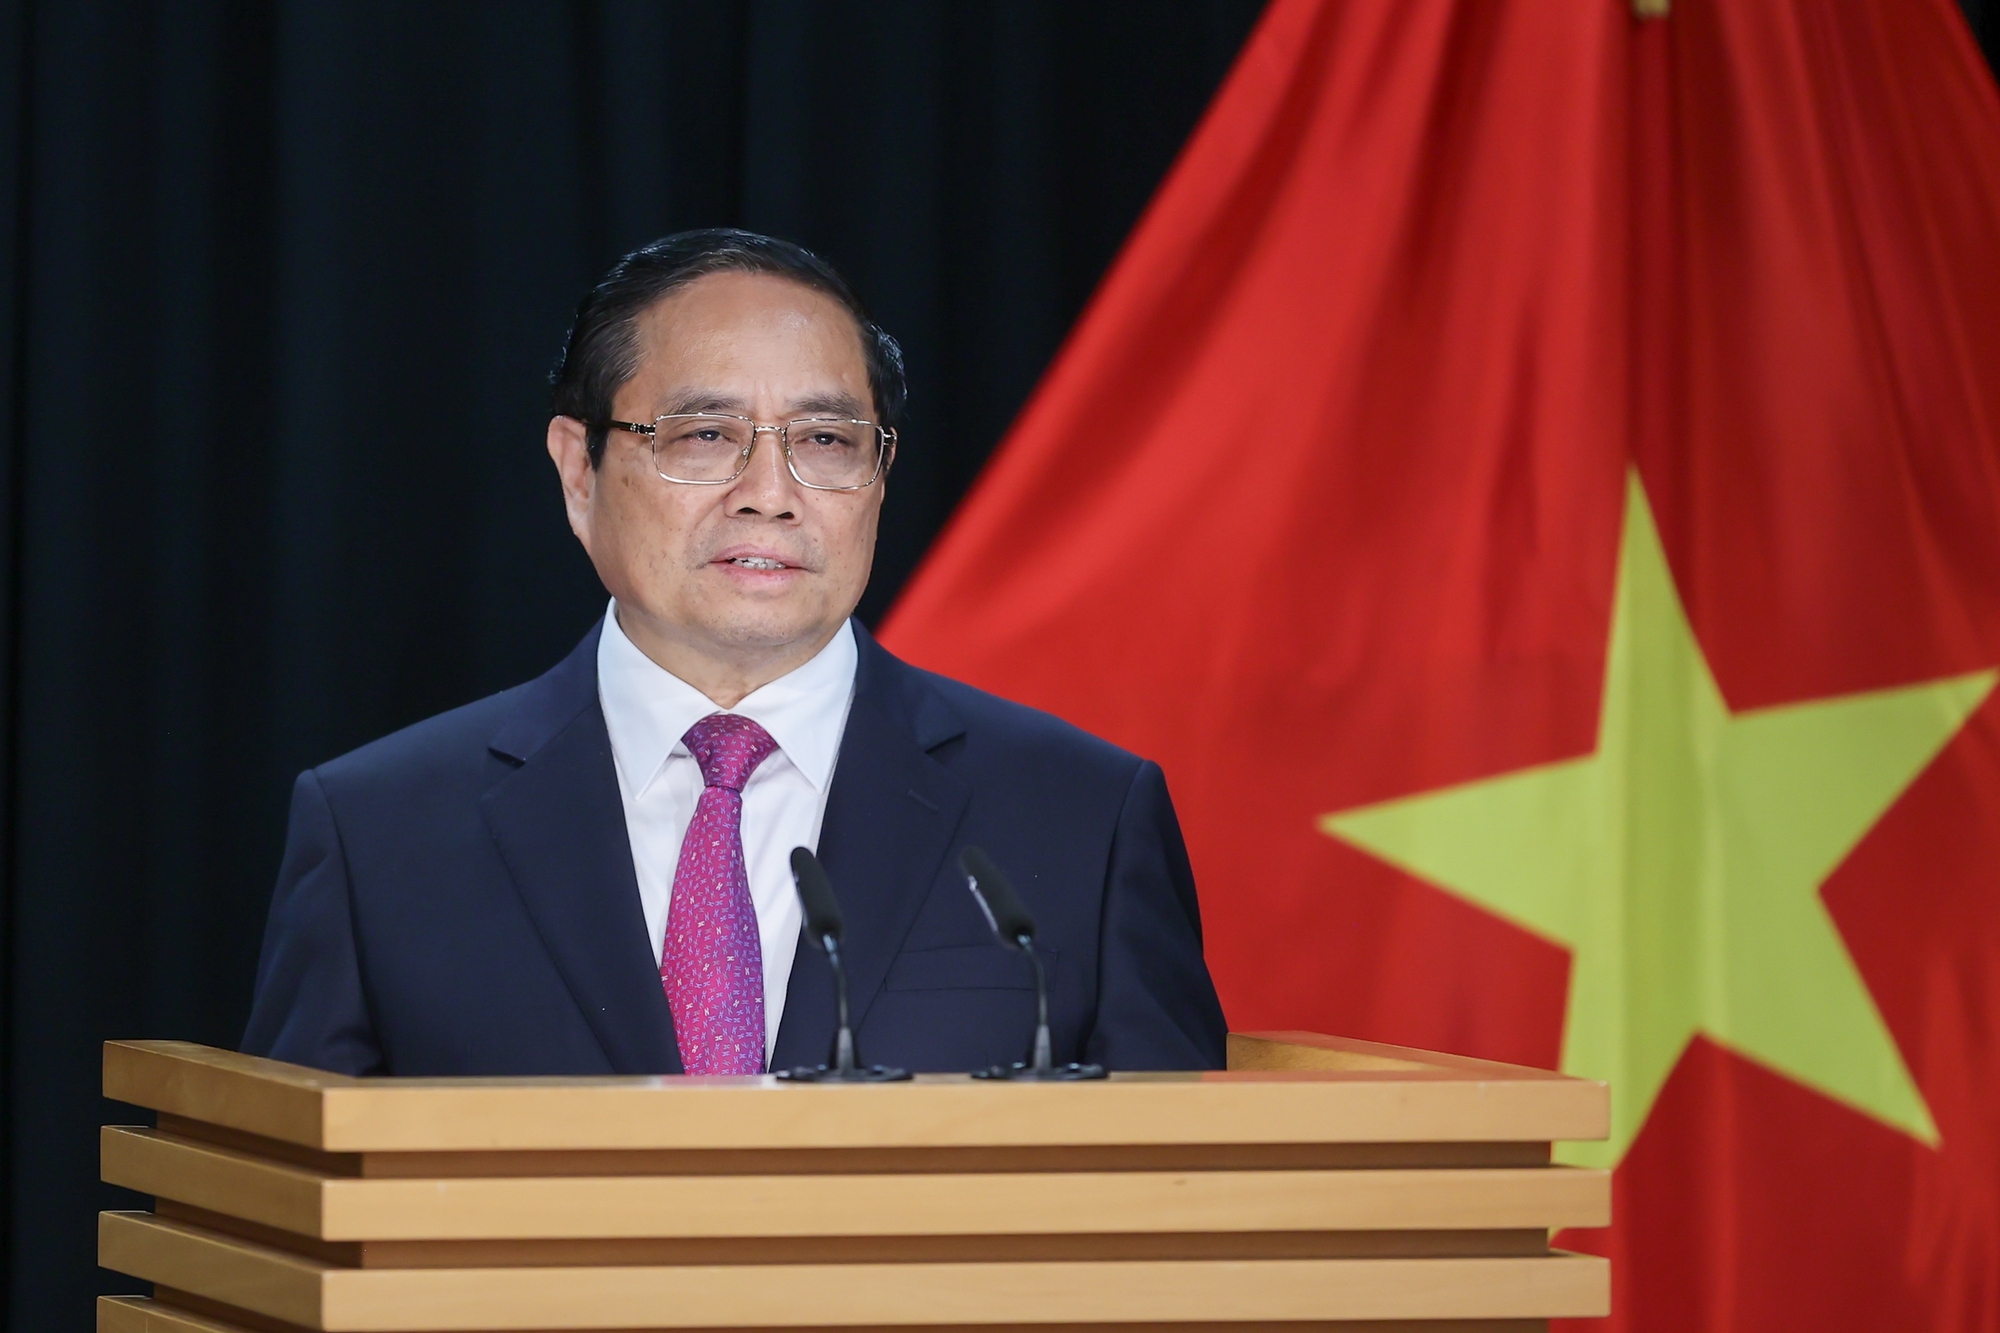 Thủ tướng Phạm Minh Chính tin rằng, với nhiều kết quả tốt đẹp, chuyến thăm lần này sẽ góp phần đưa quan hệ song phương phát triển lên tầm cao mới, hướng tới kỷ niệm 50 năm thiết lập quan hệ ngoại giao vào năm 2025